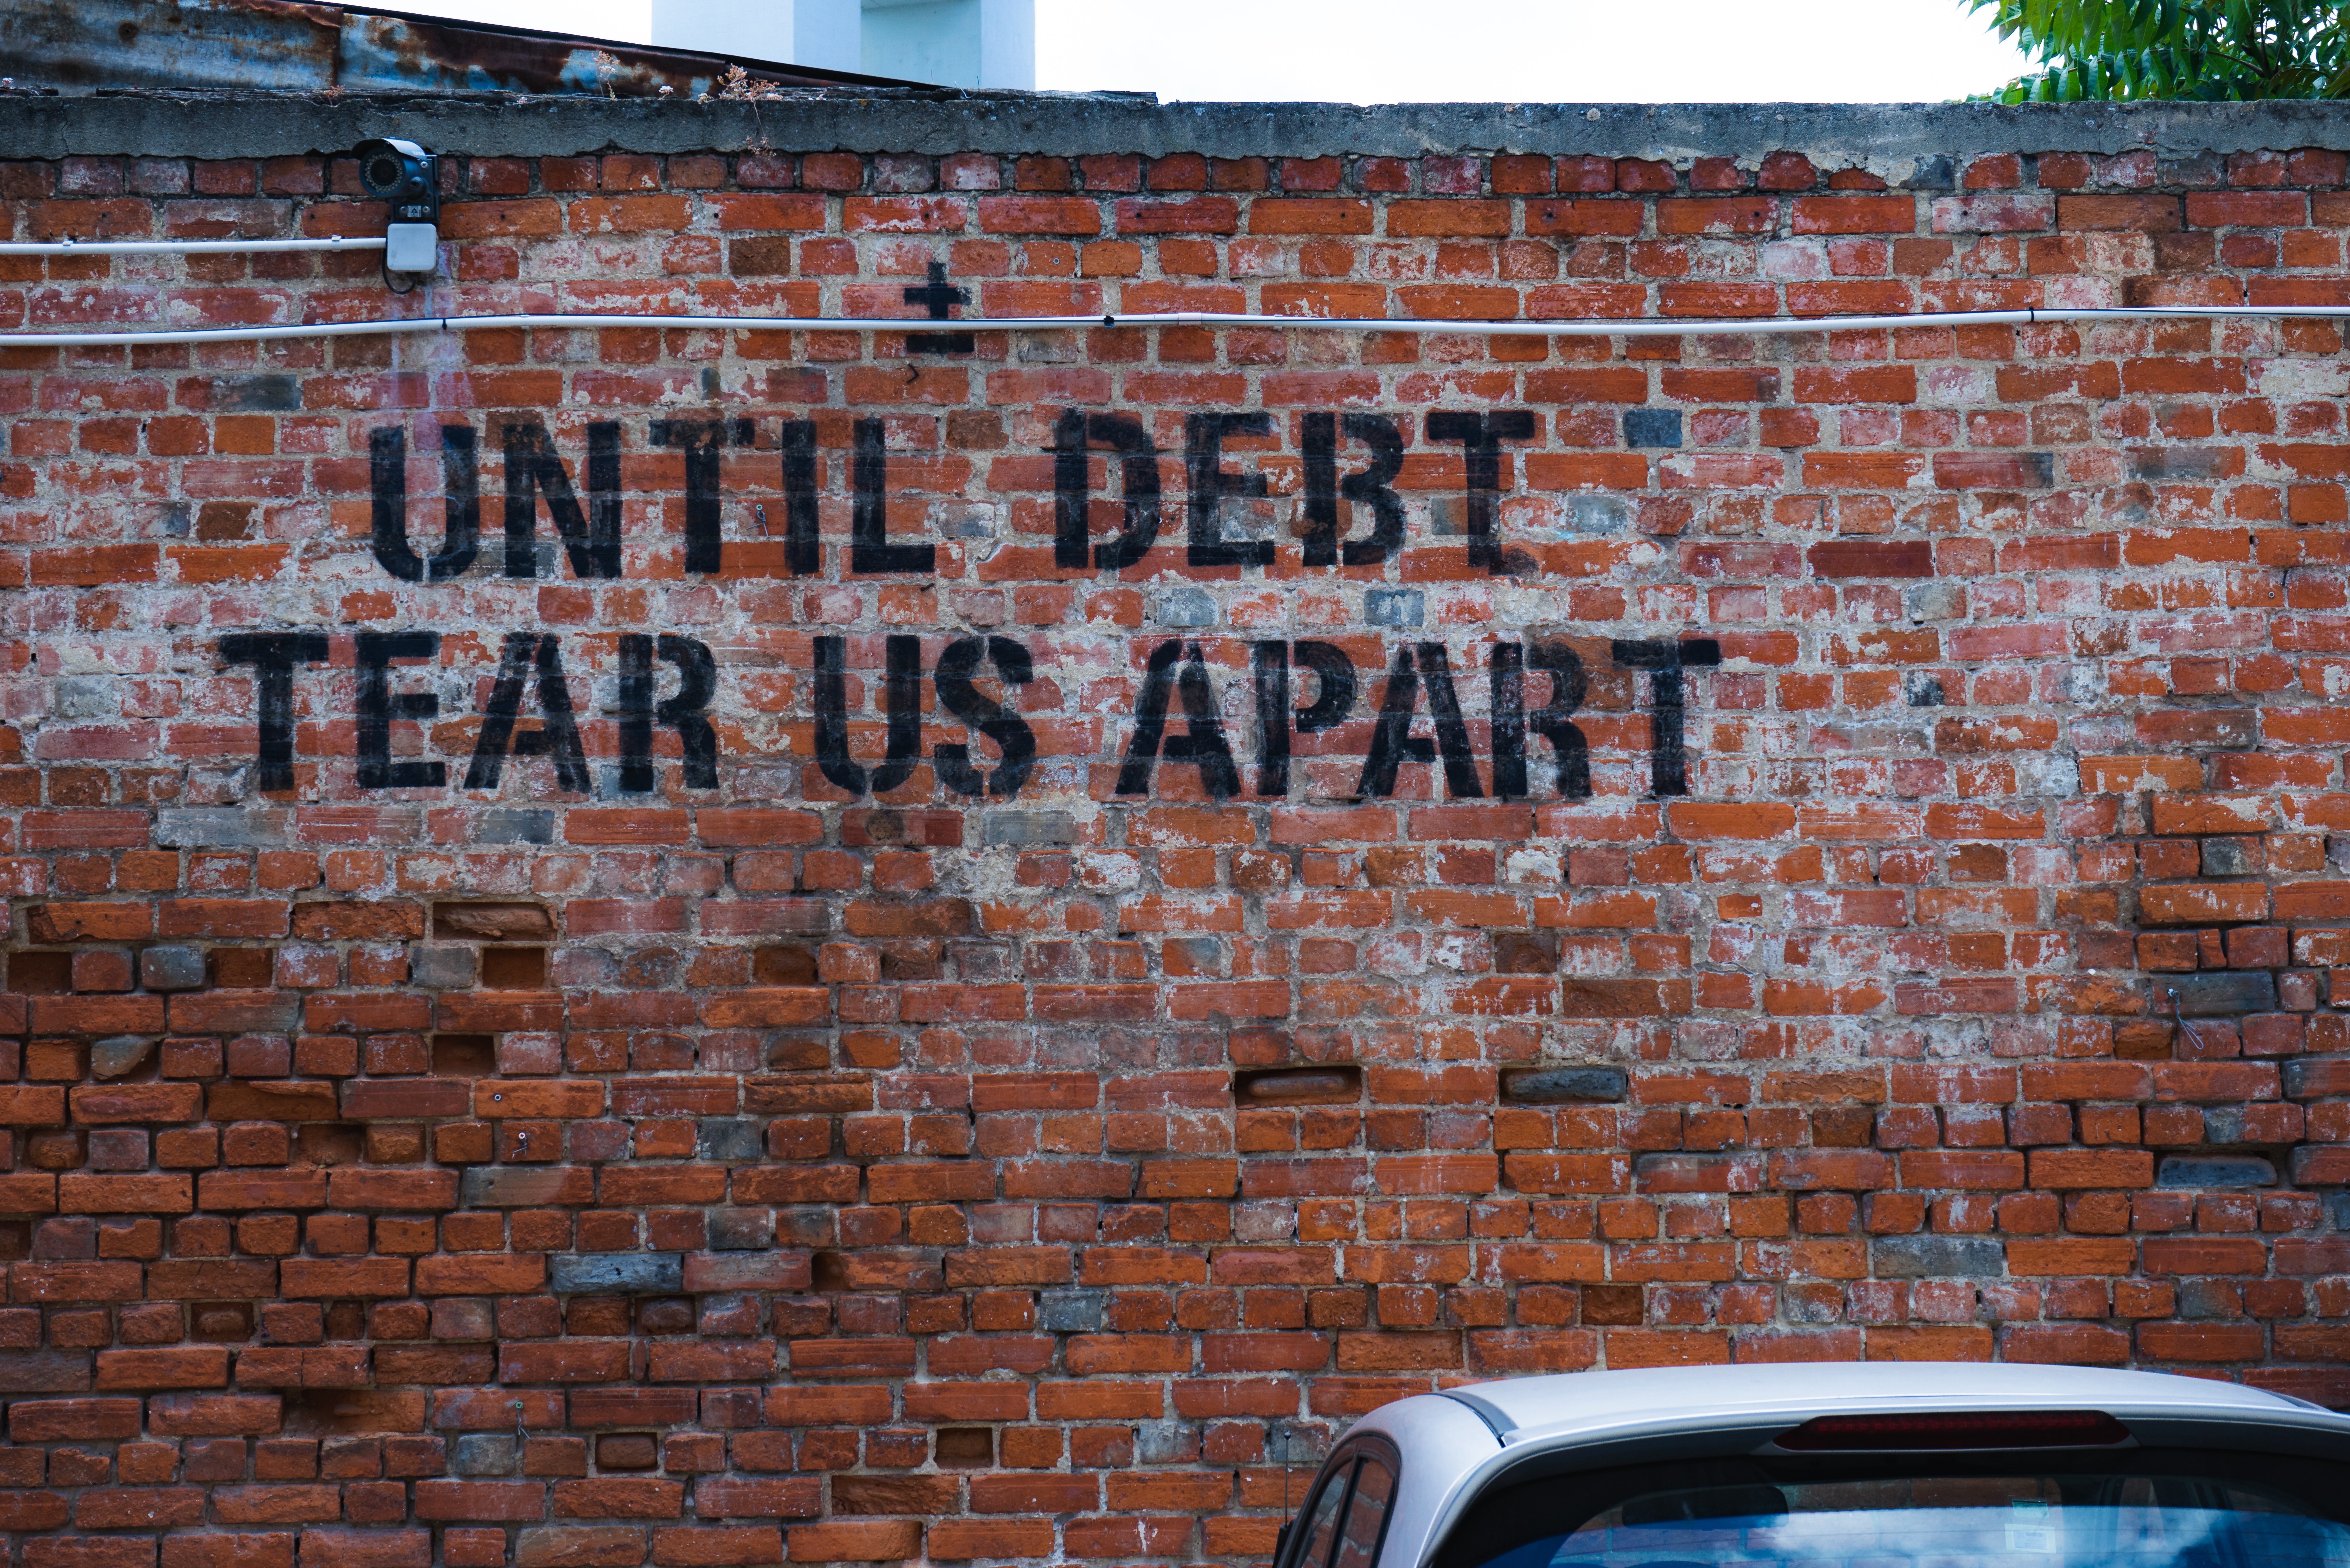 until debt tear us apart graffiti on a brick wall